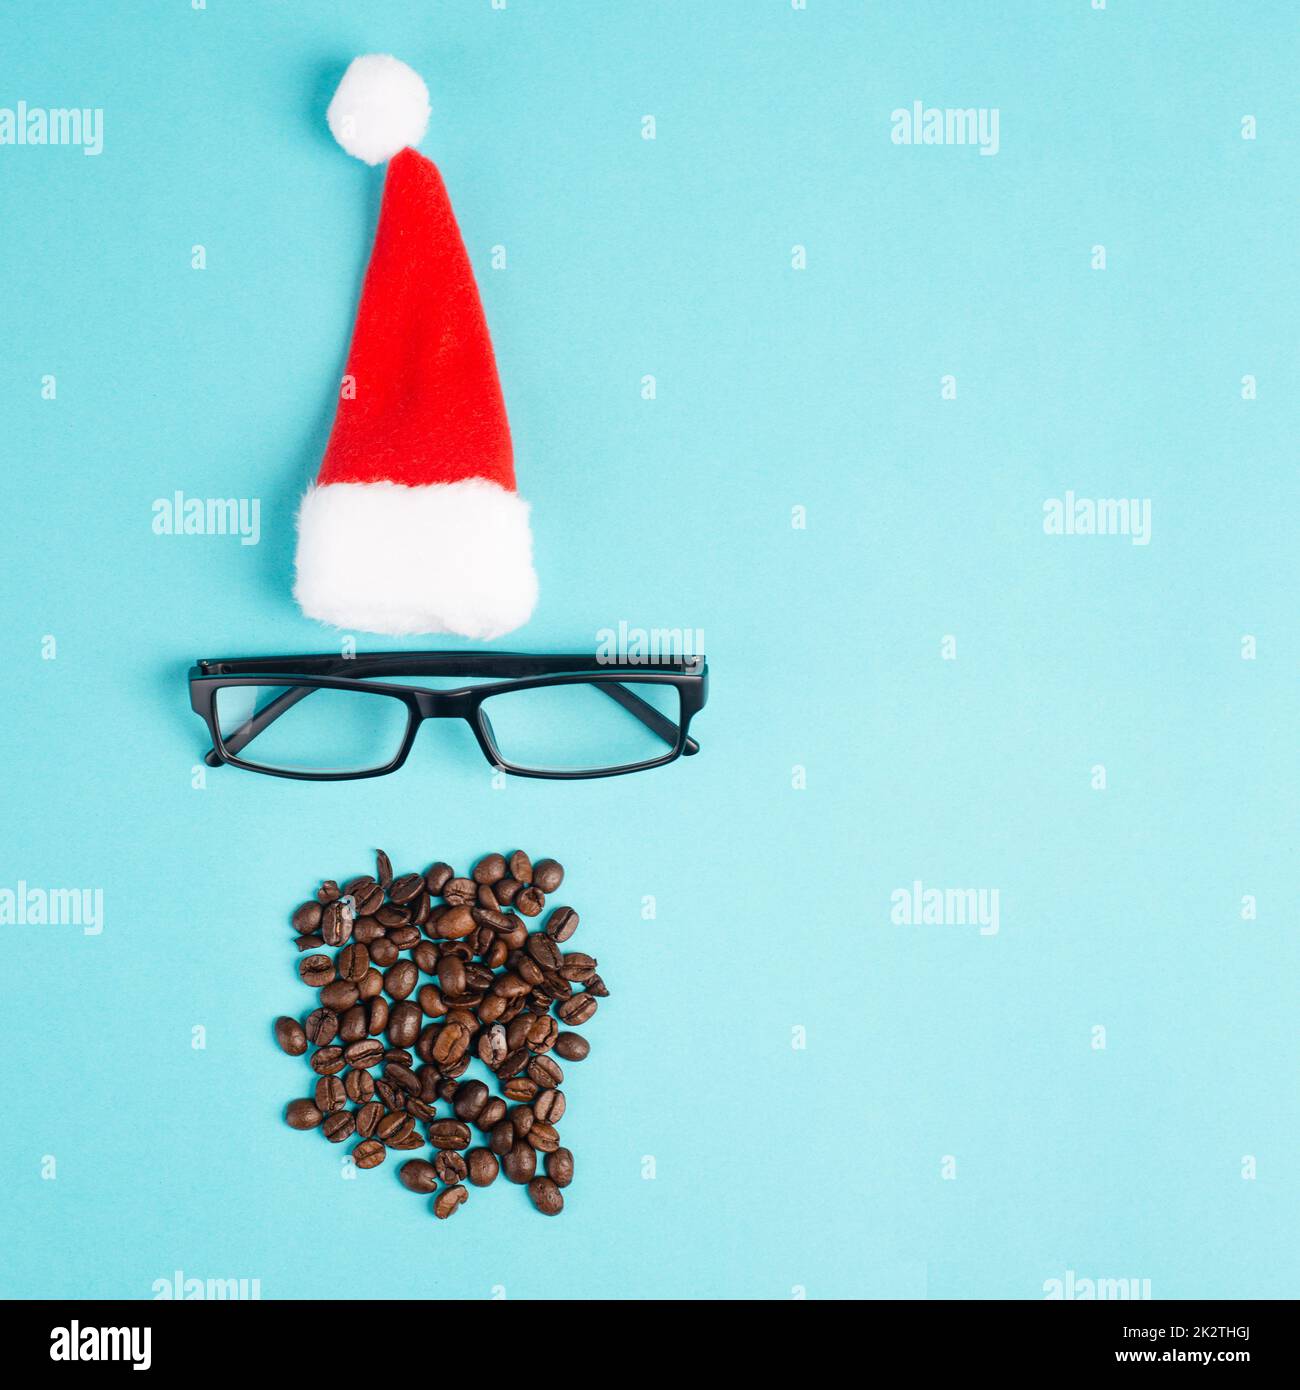 Stagione di Natale, cappello rosso di Babbo Natale, occhiali, barba con chicchi di caffè, faccia divertente, ora invernale, biglietto di auguri per le feste, sfondo blu Foto Stock